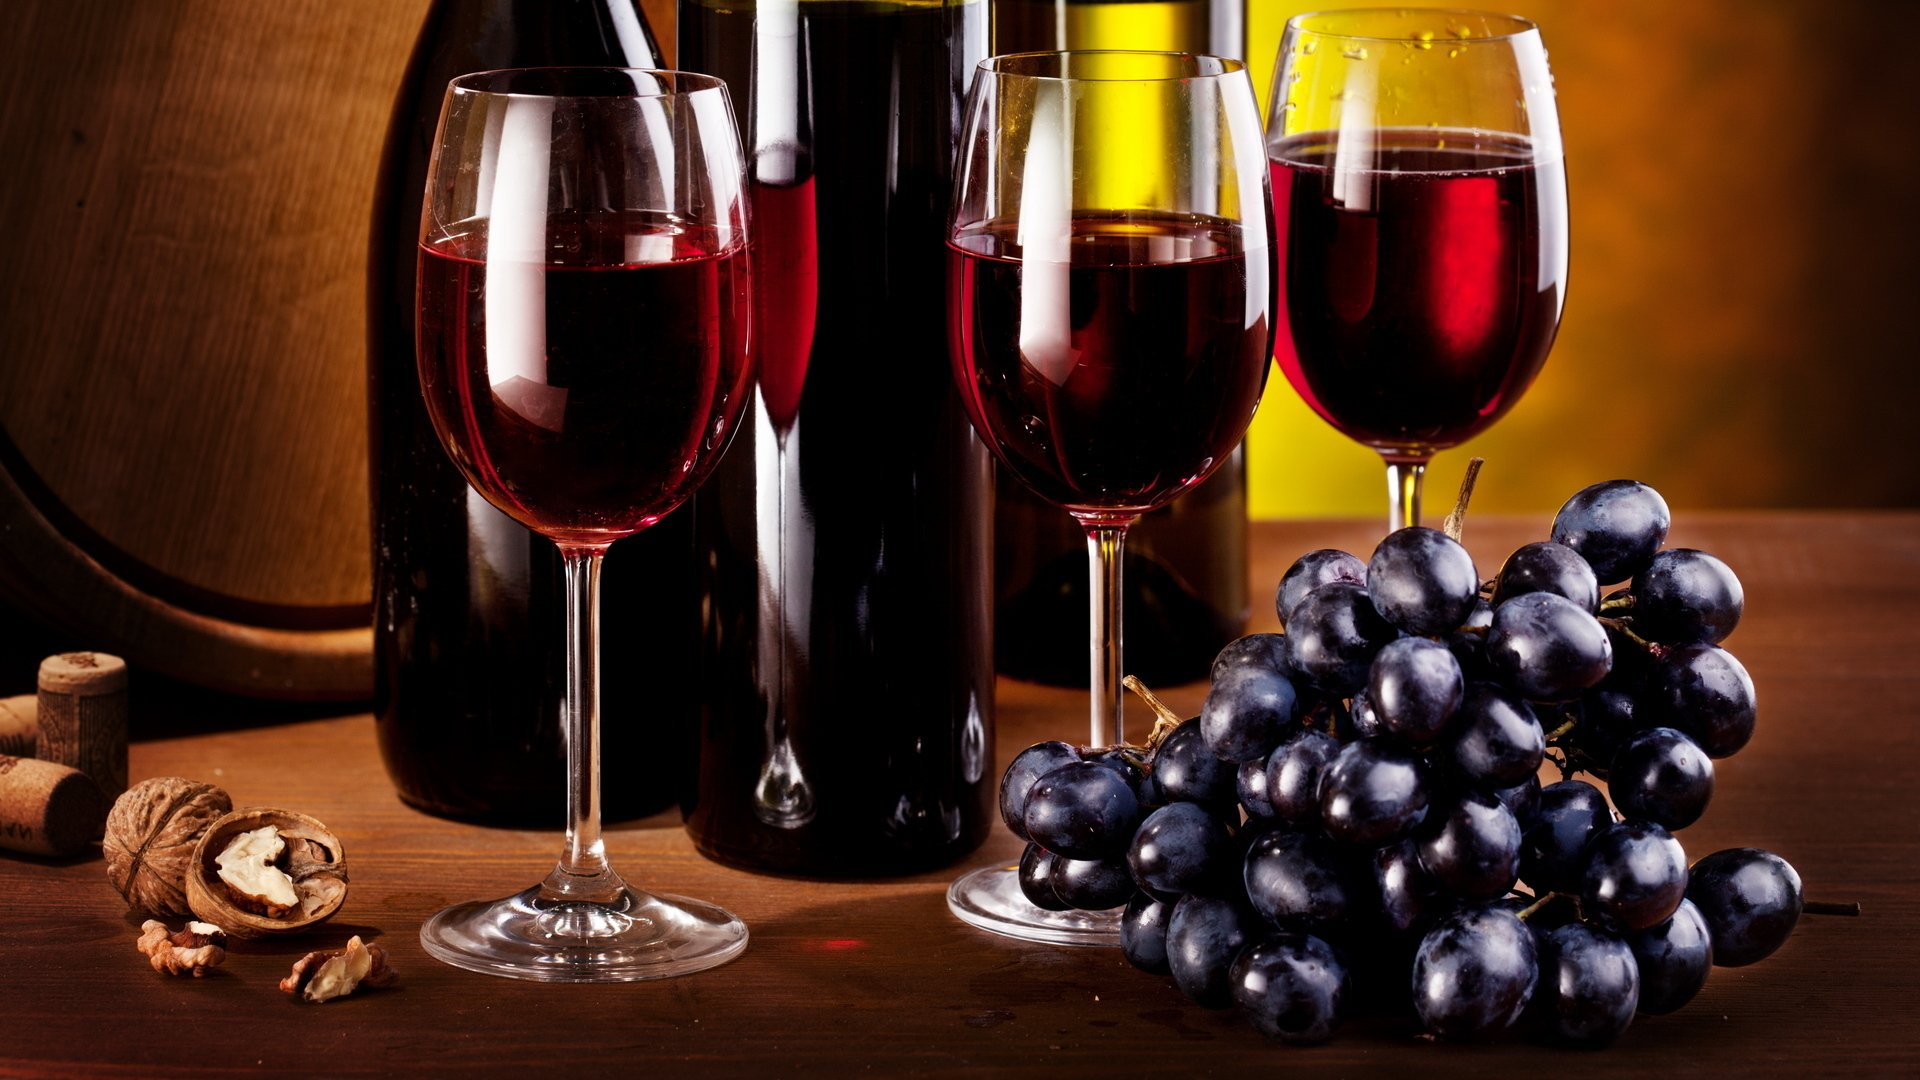 สารพัดประโยชน์ ชะลอความแก่ ด้วยสารสกัดจากไวน์องุ่น ไม่ลองคือพลาด…. (Resveratrol)